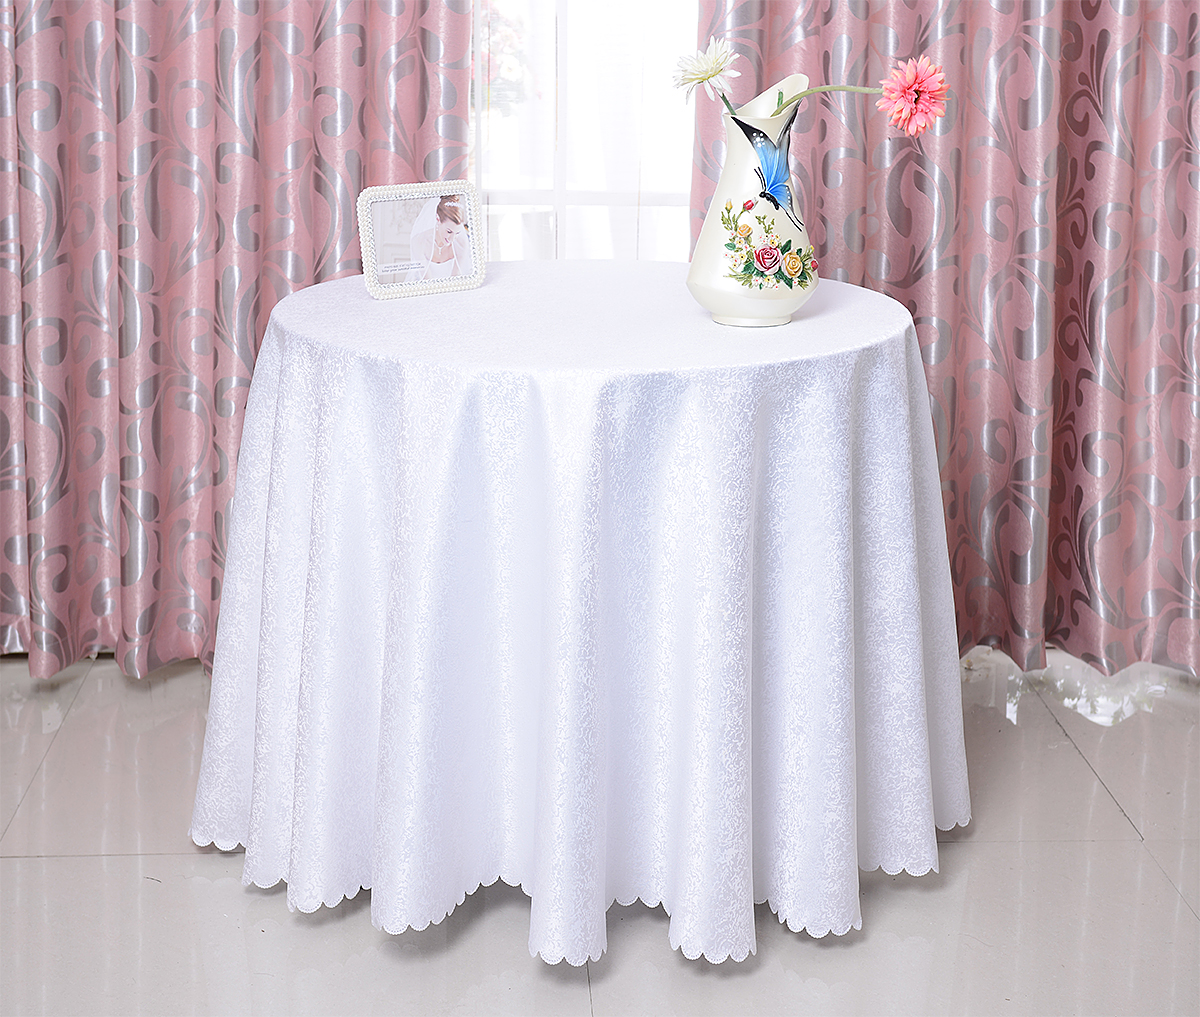 轻奢田园白色蕾丝桌布绣花布艺装饰台布茶几方桌野餐垫拍照背景布-阿里巴巴